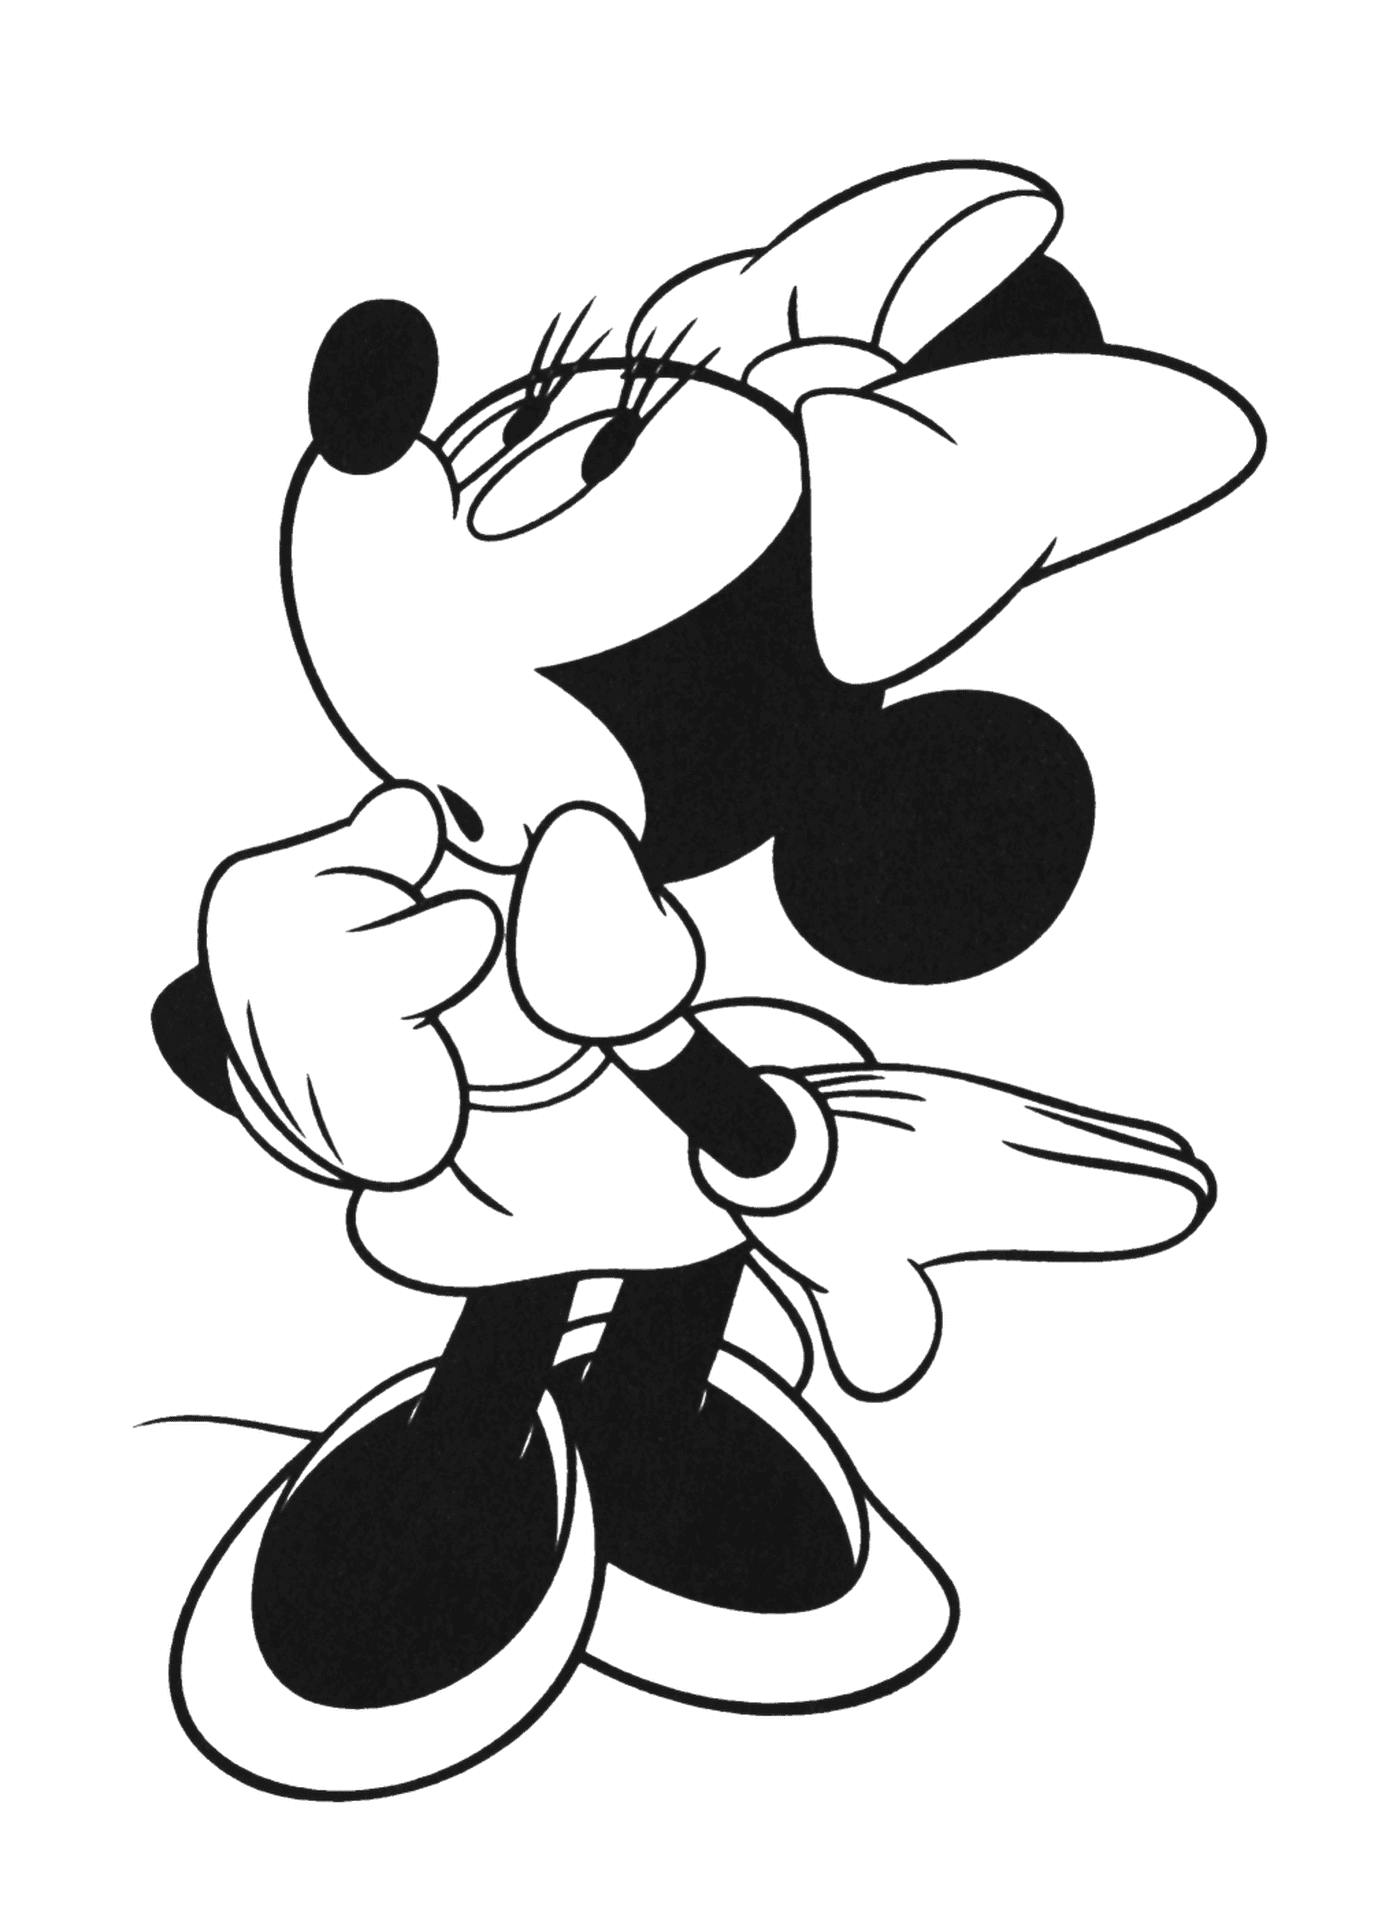  Mickey Mouse, companheiro de Minnie desde 1928 